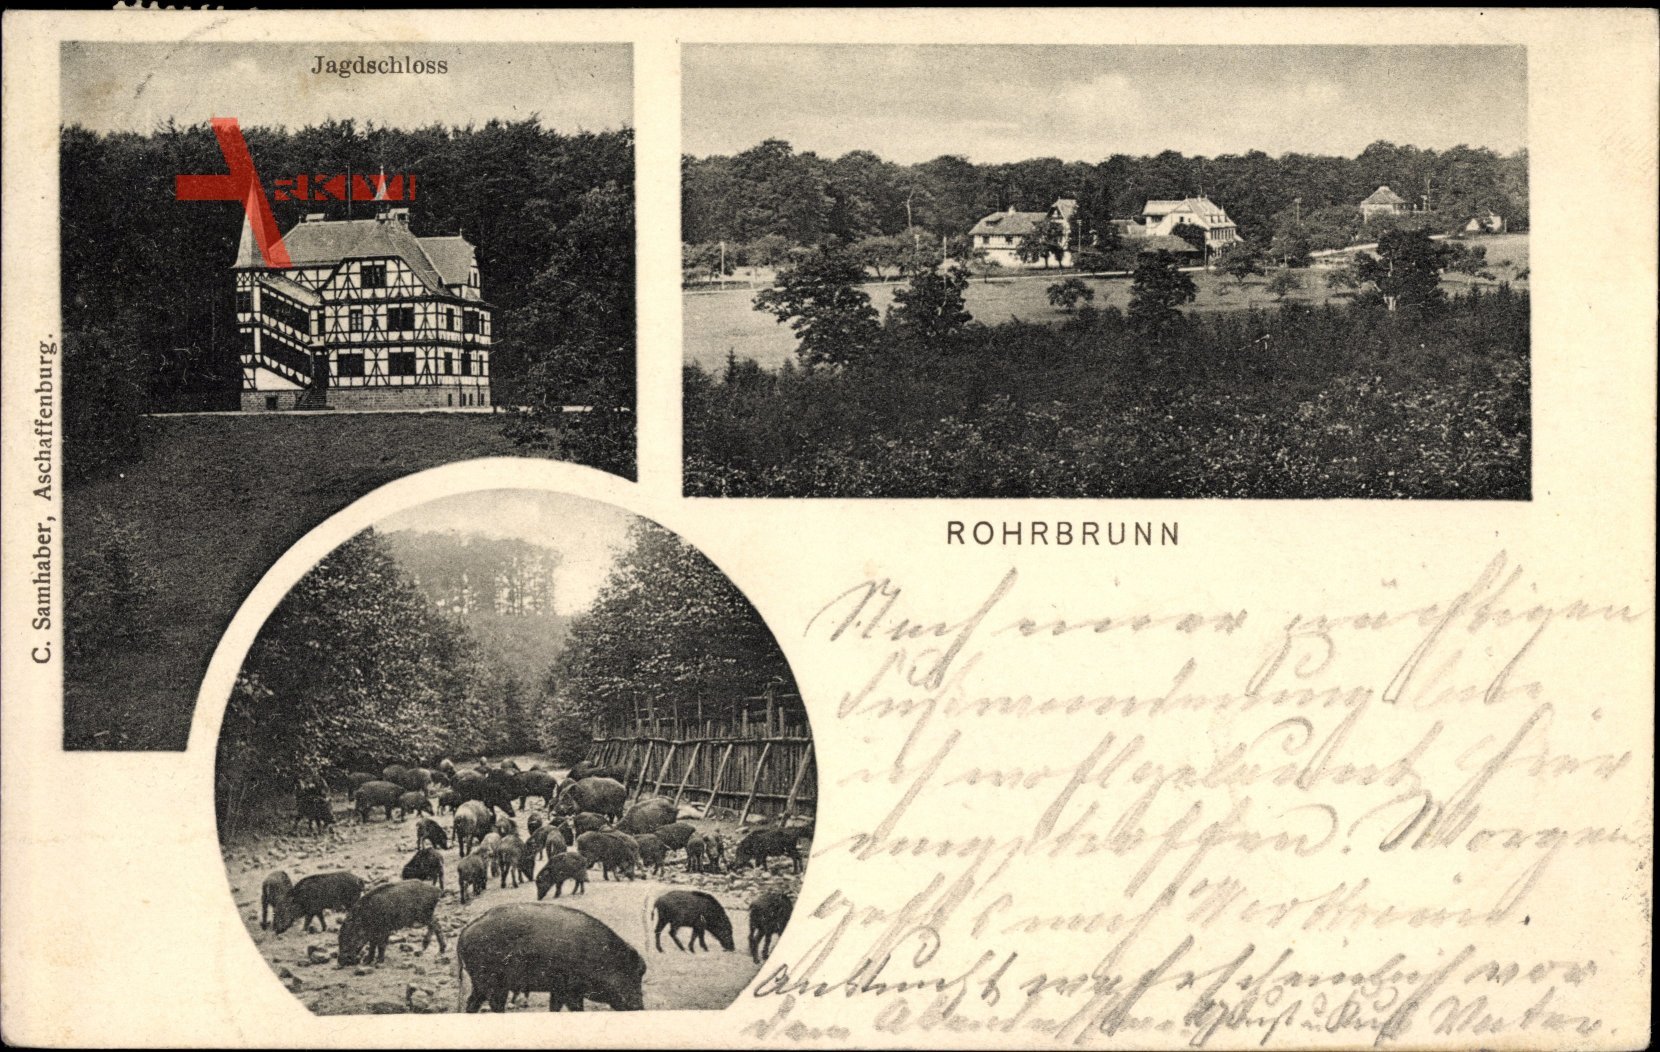 Rohrbrunn Weibersbrunn in Bayern, Jagdschloss, Wildschweine, Totalansicht